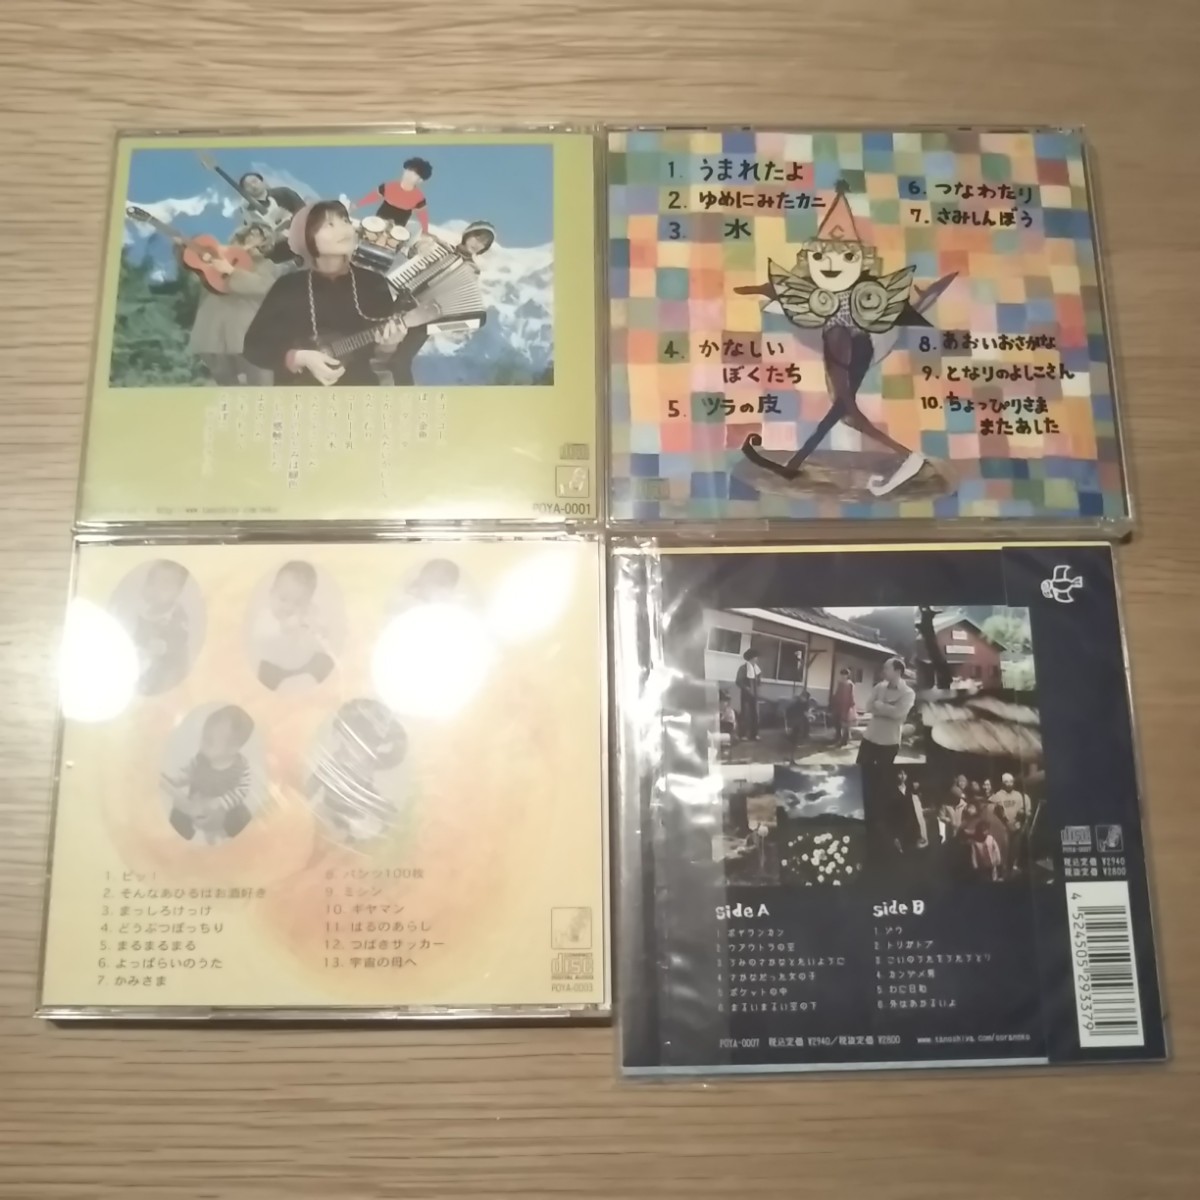 ラ・ソラネコCD4枚セット『ケモノちゃん』『かみさま』『ちょっぴりさま』『ポヤランカン』